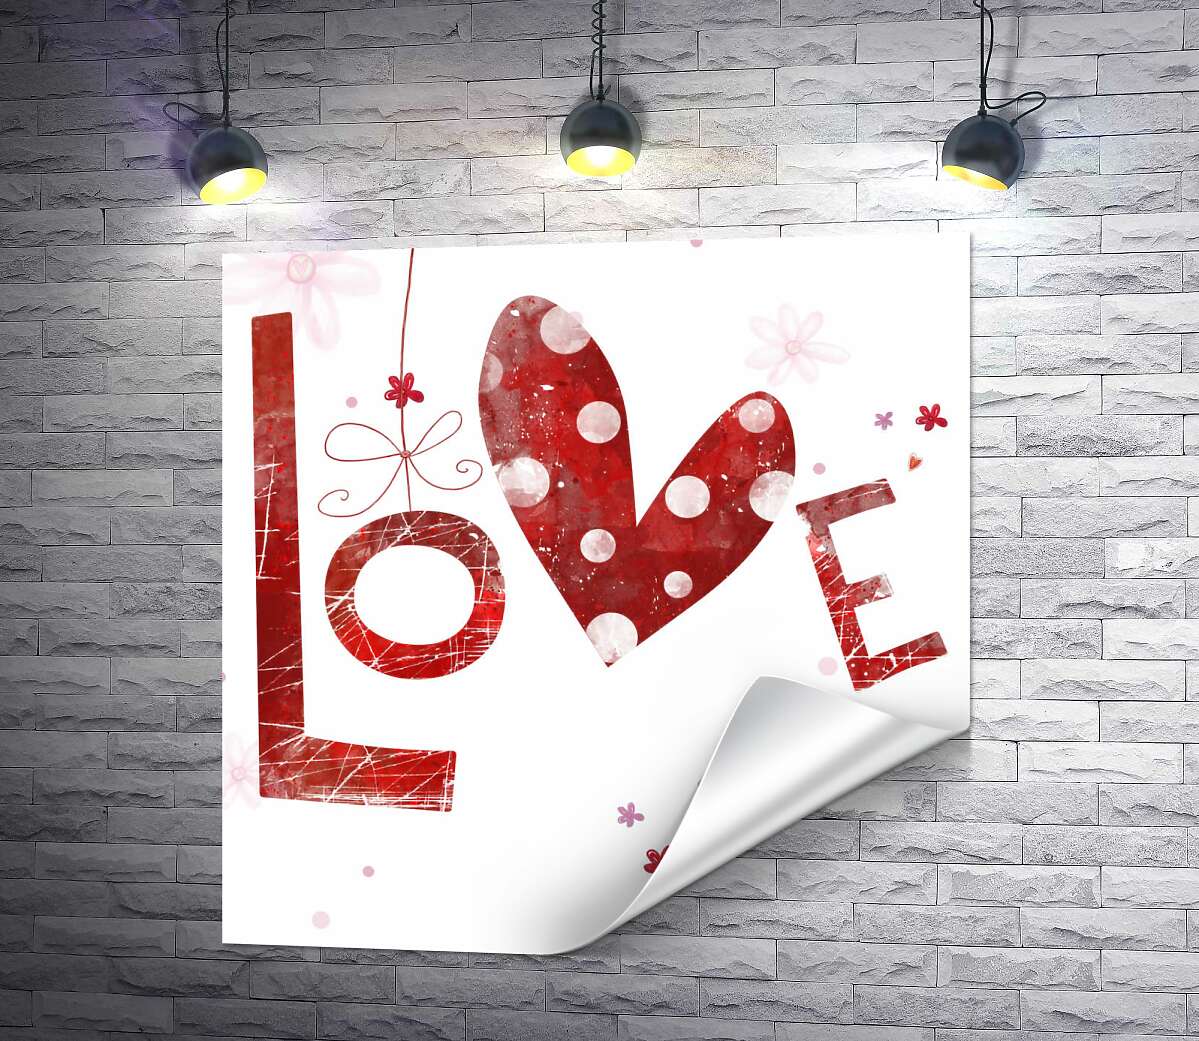 друк Плямисте сердечко прикрашає напис "love"